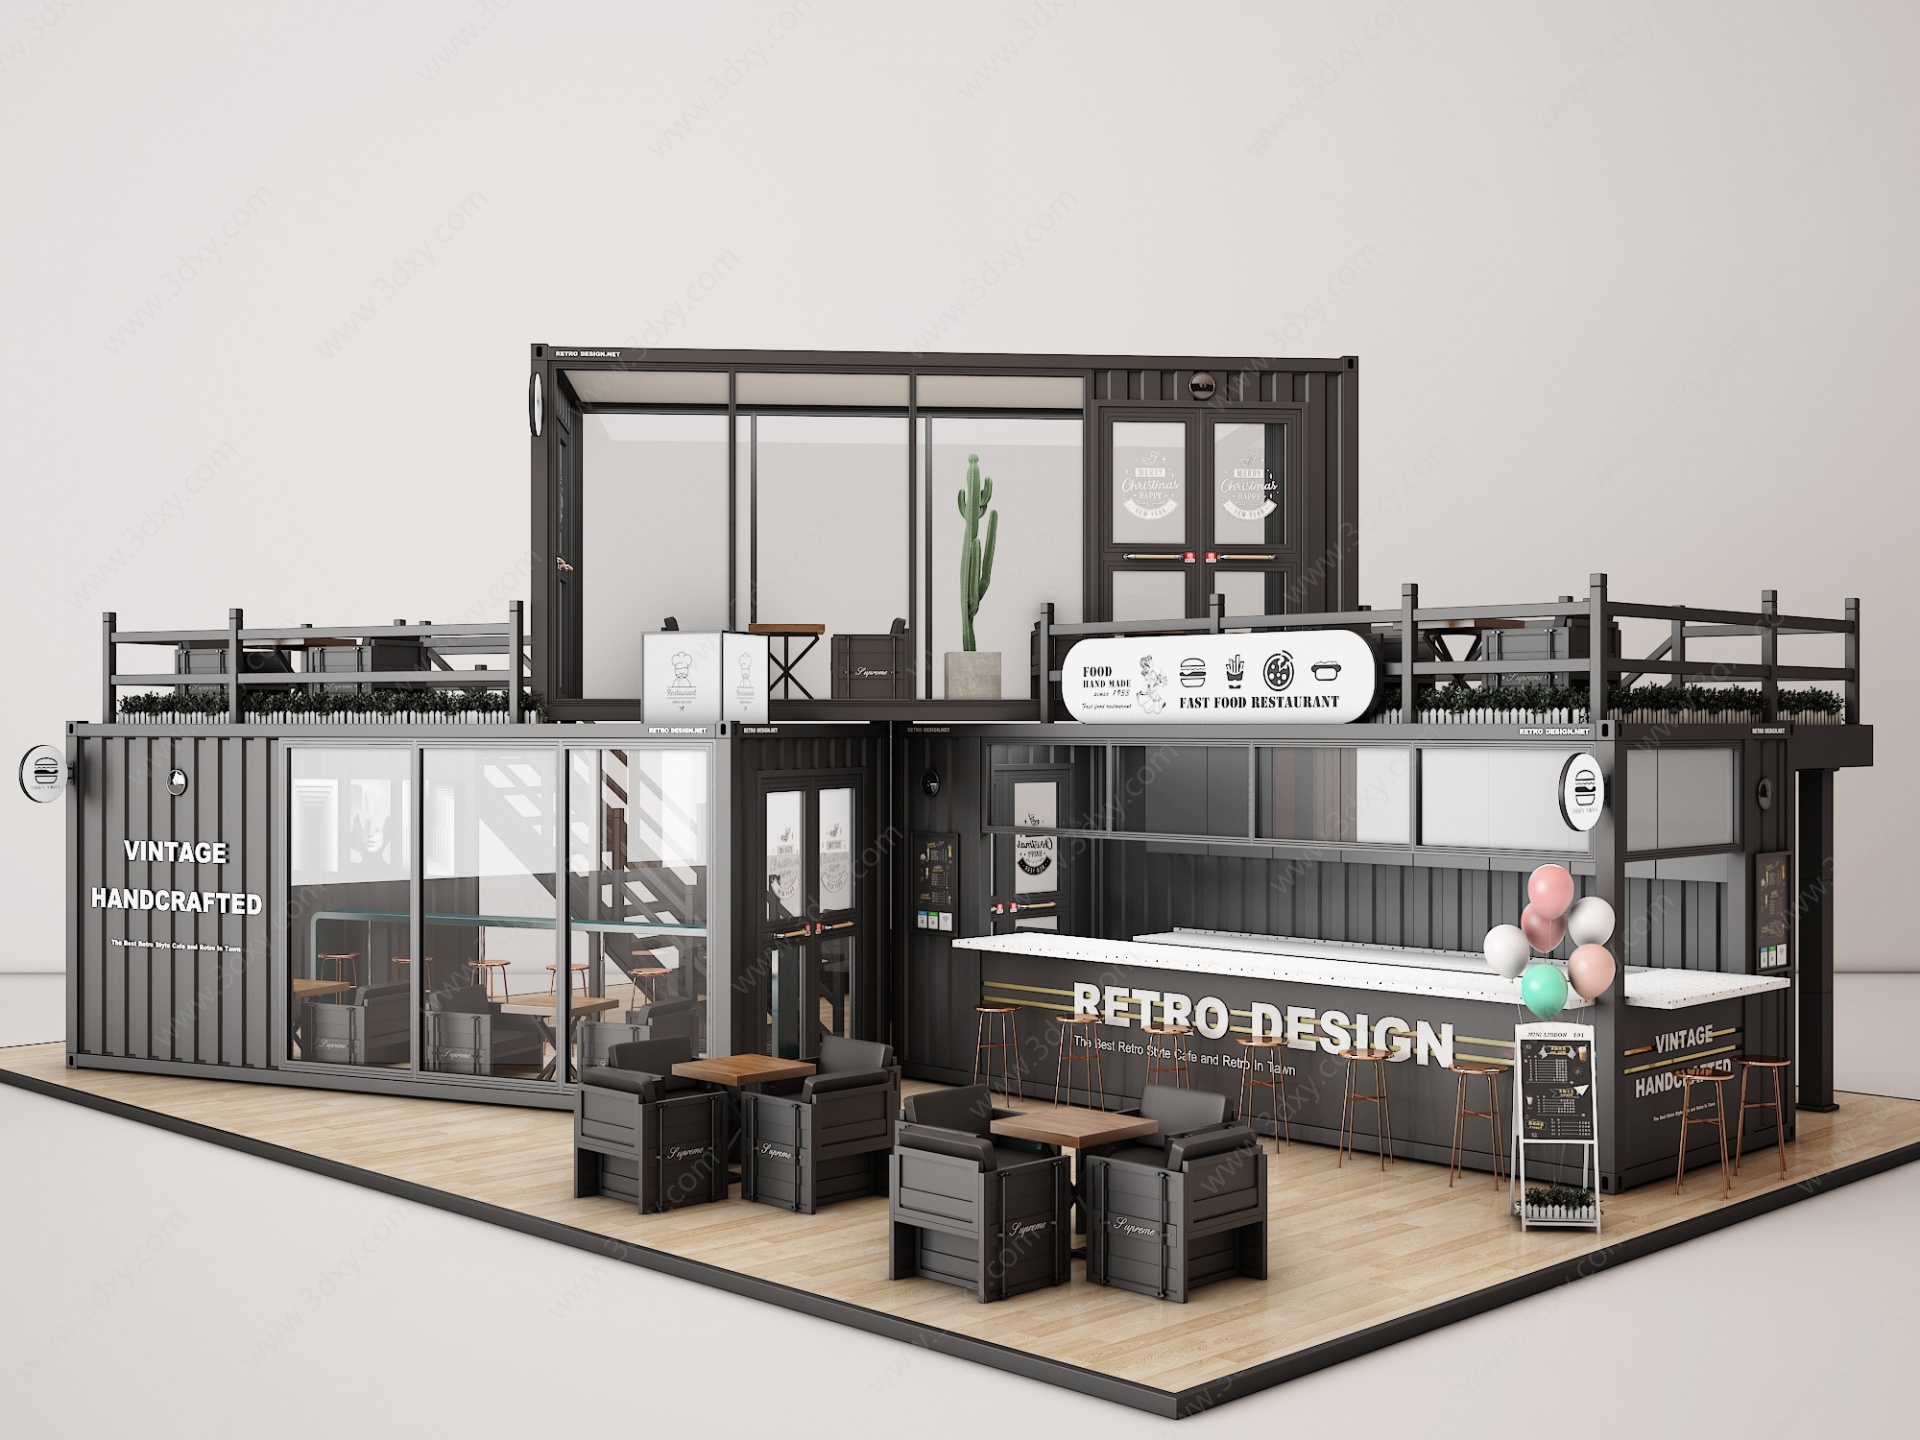 快餐厅3D模型